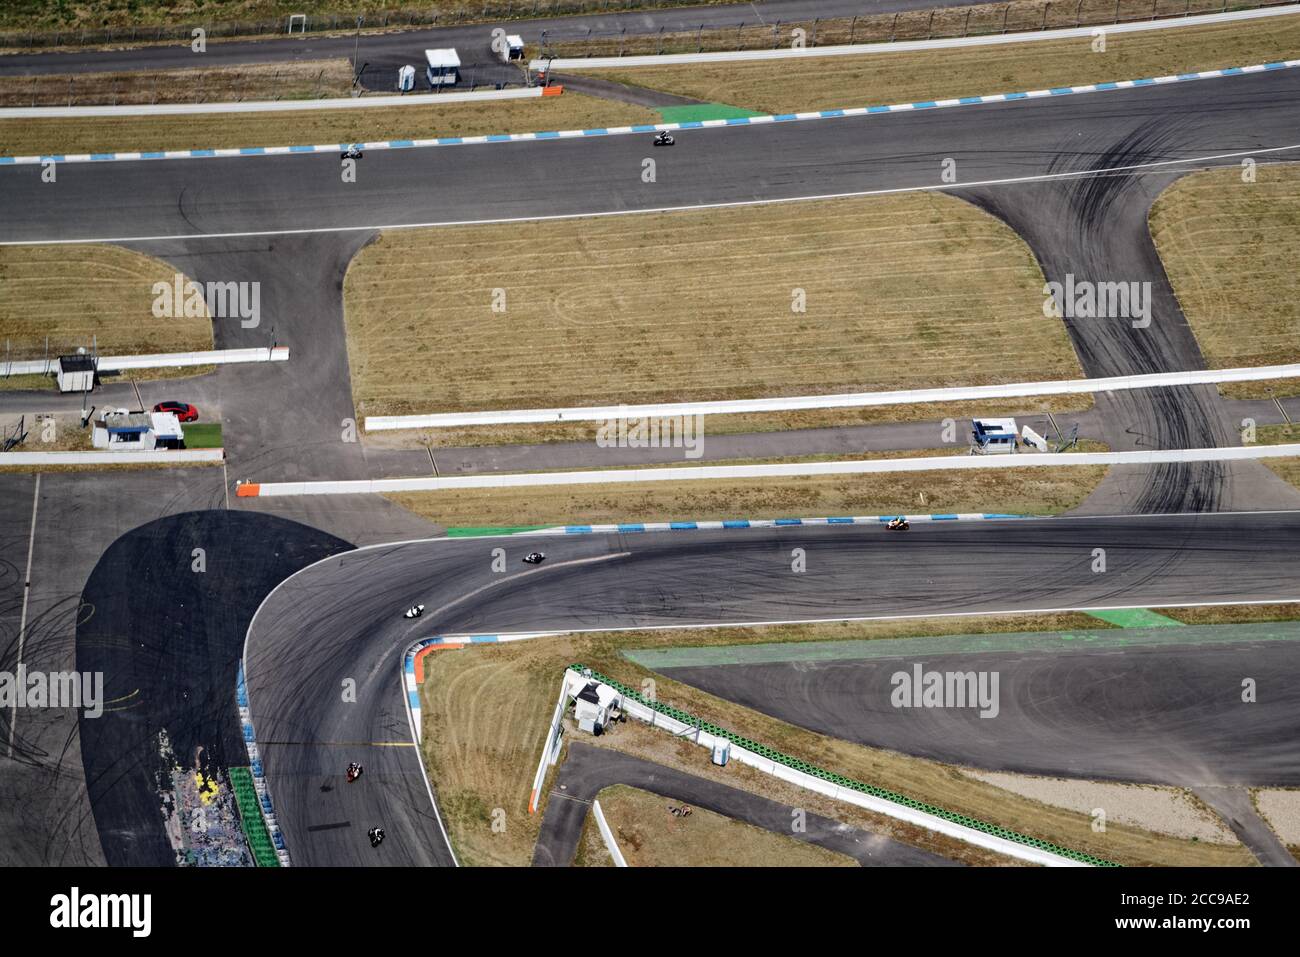 Am berühmten Hockenheim-Ring geht es aus der Luft zu einem Motorradrennen. Eine Rennstrecke, auf der auch Formel-1-Rennen stattfinden. Stockfoto